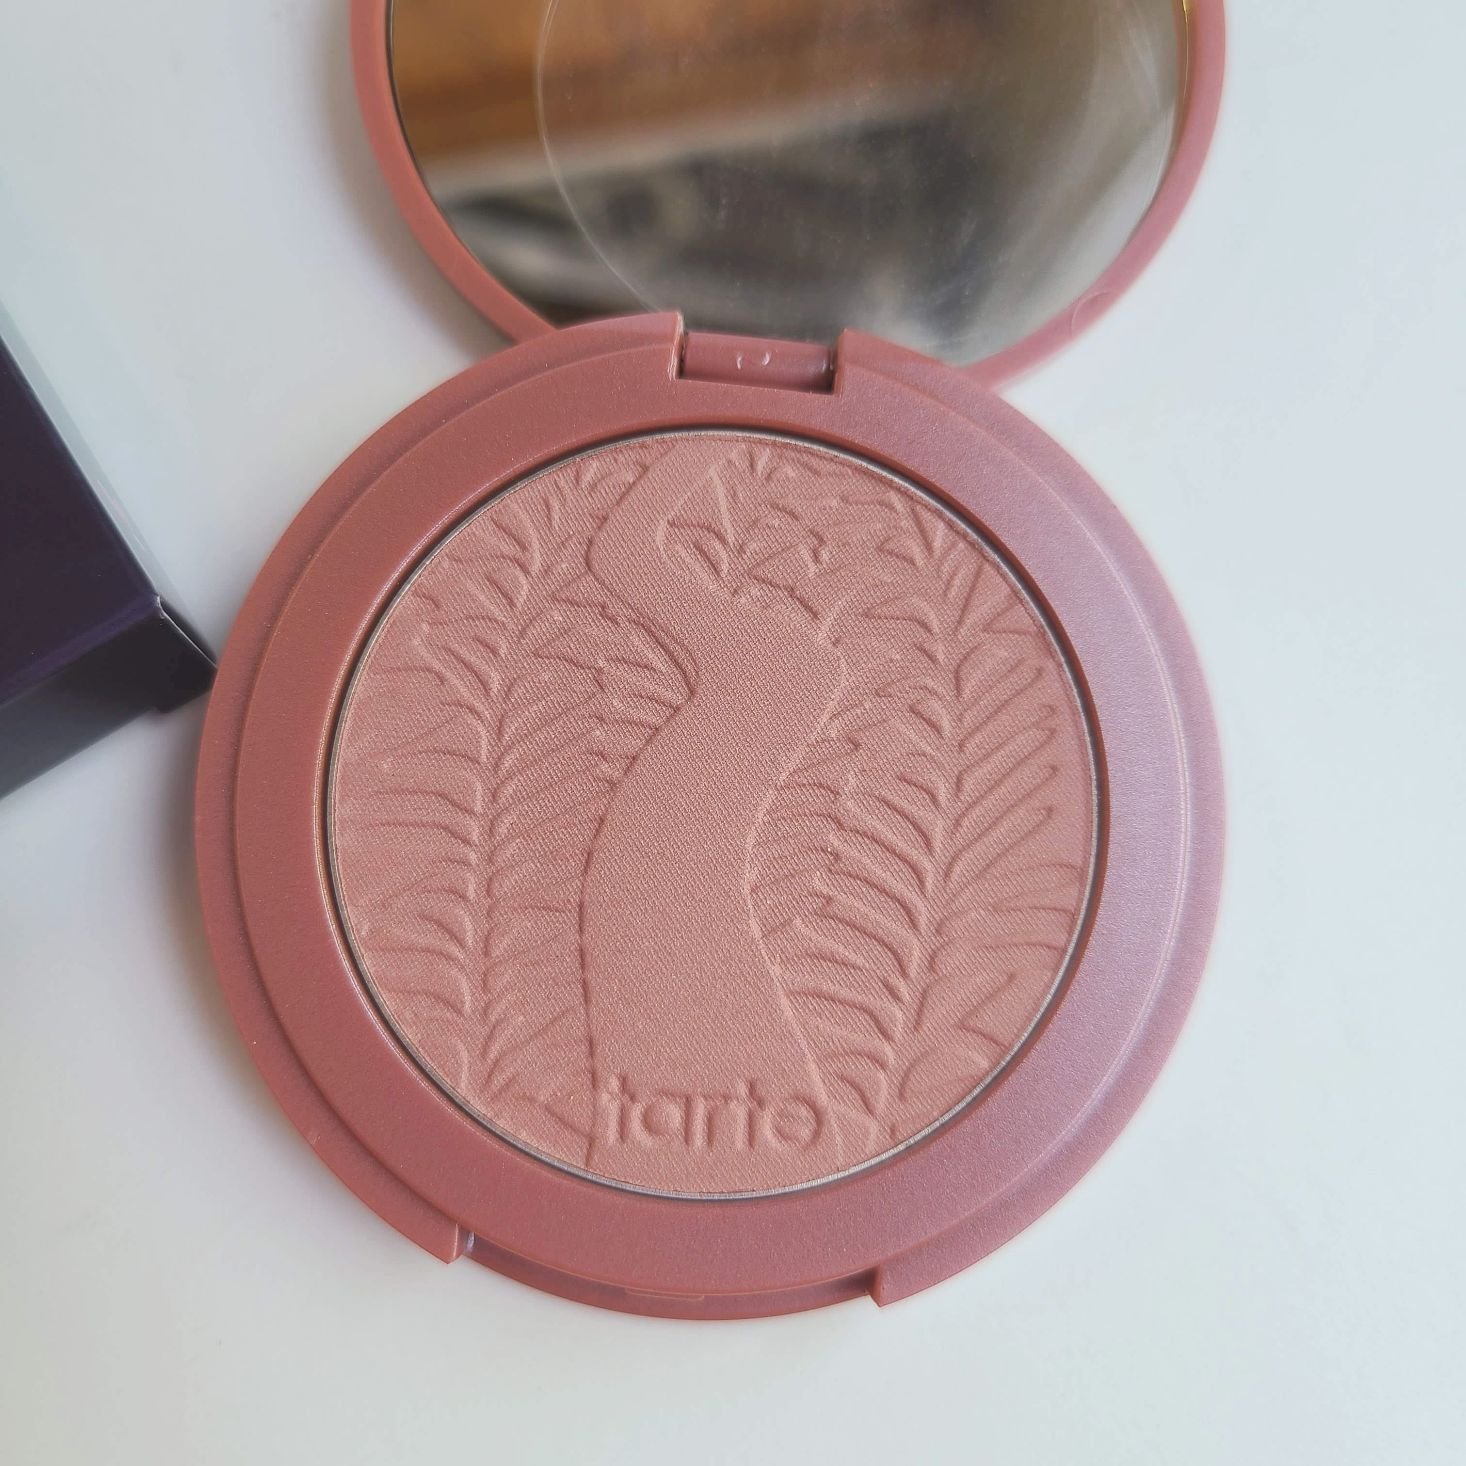 Tarte Create Your Own Beauty Kit June 2020 blush